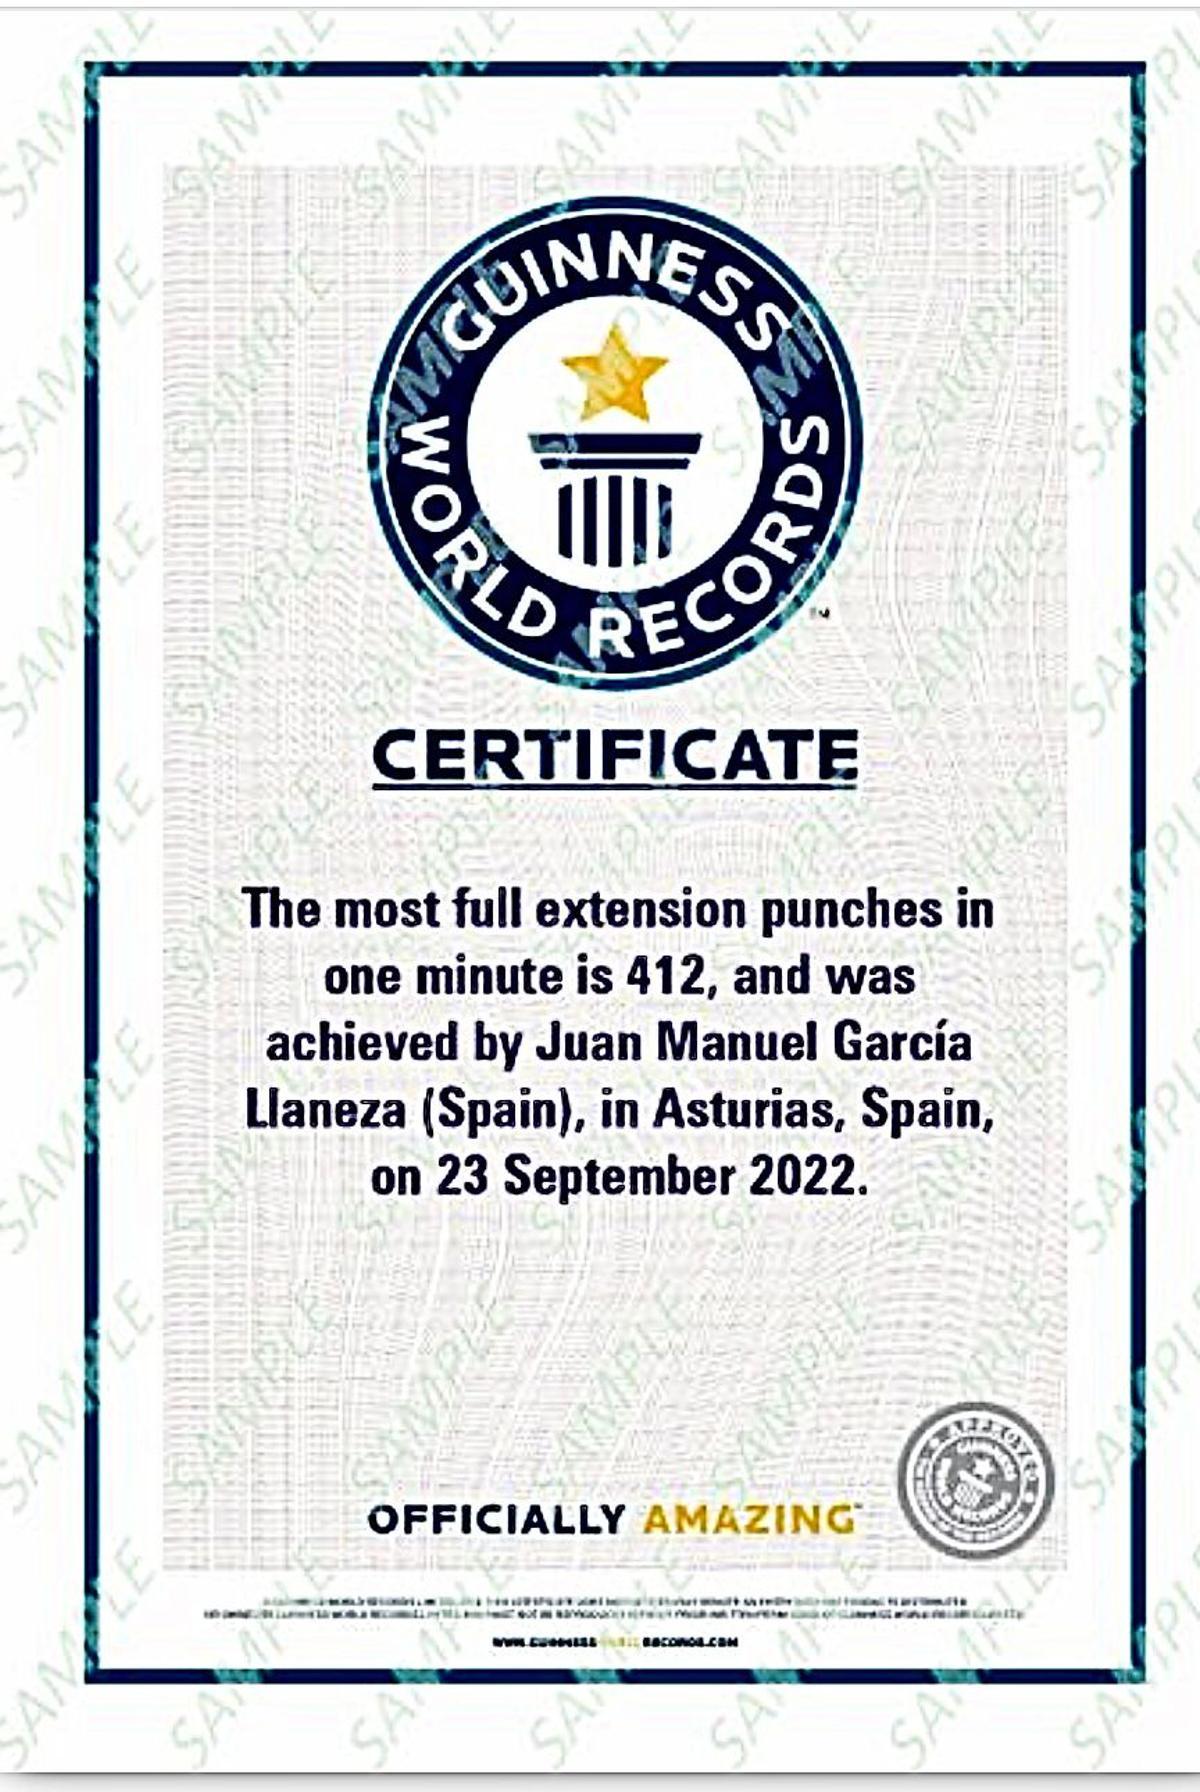 El certificado del Guinness World Records.